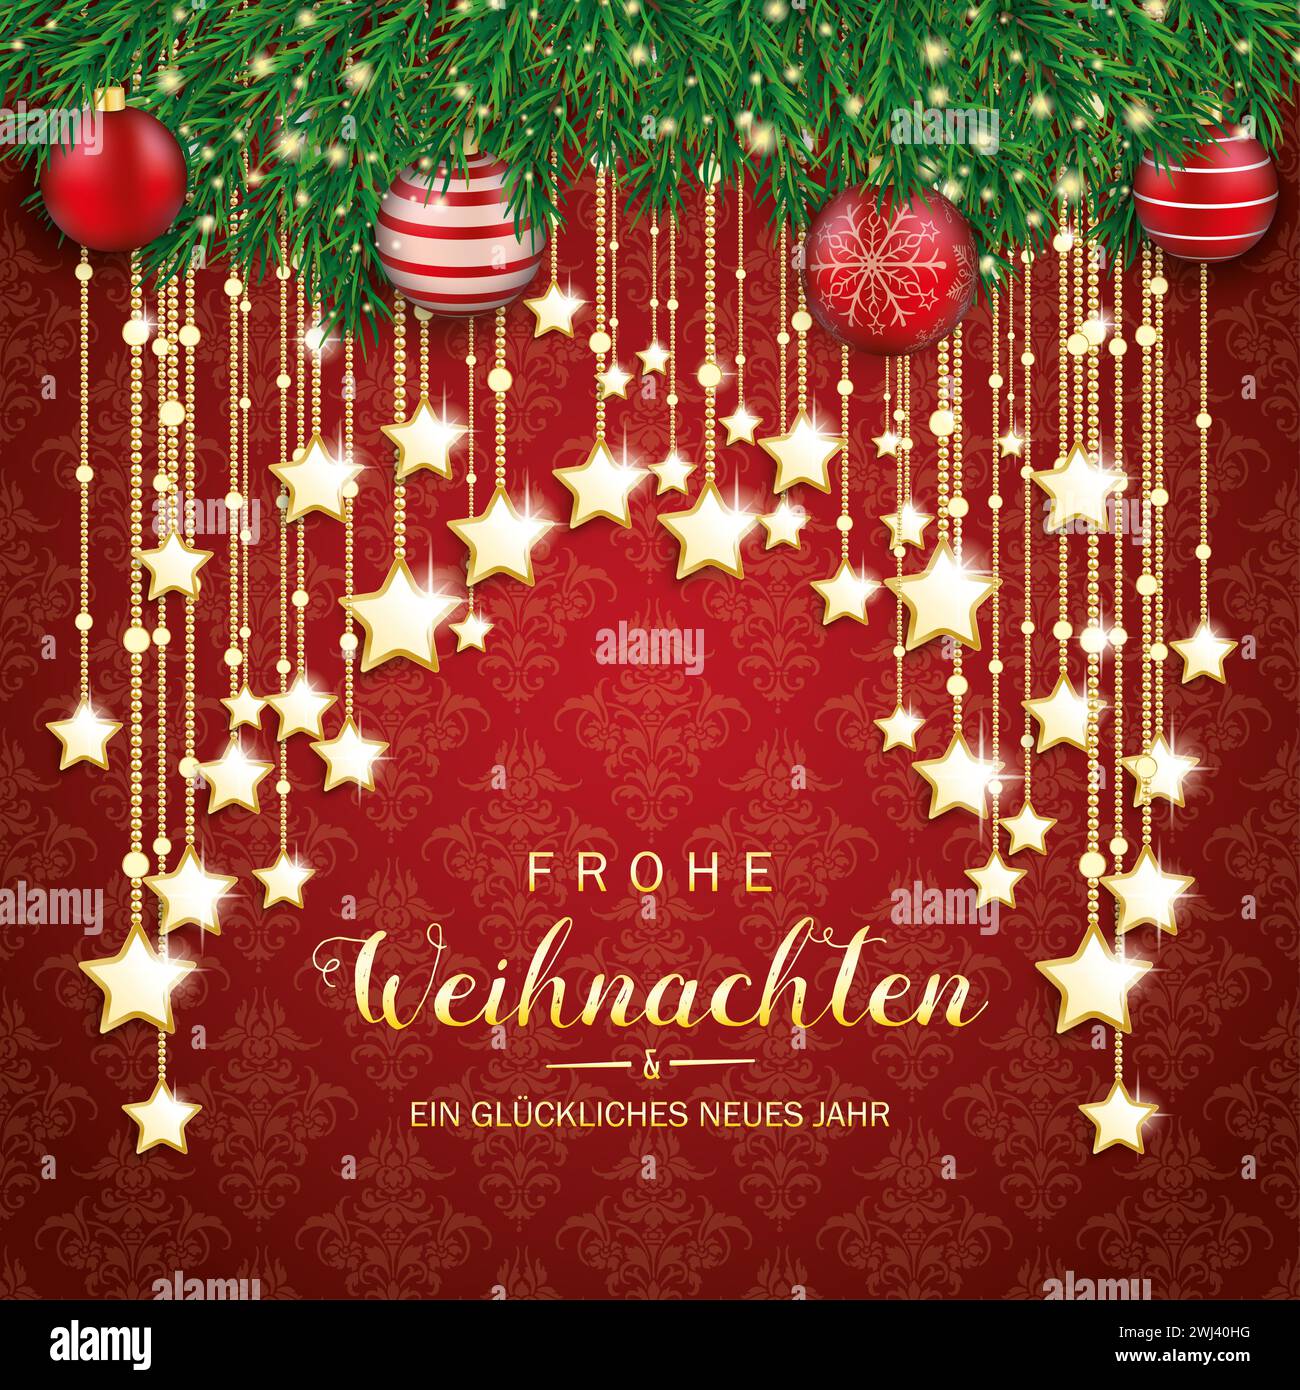 German text Frohe Weihnachten und ein glückliches neues Jahr, translate Merry Christmas and Happy New Year. Eps 10 vector file. Stock Photo